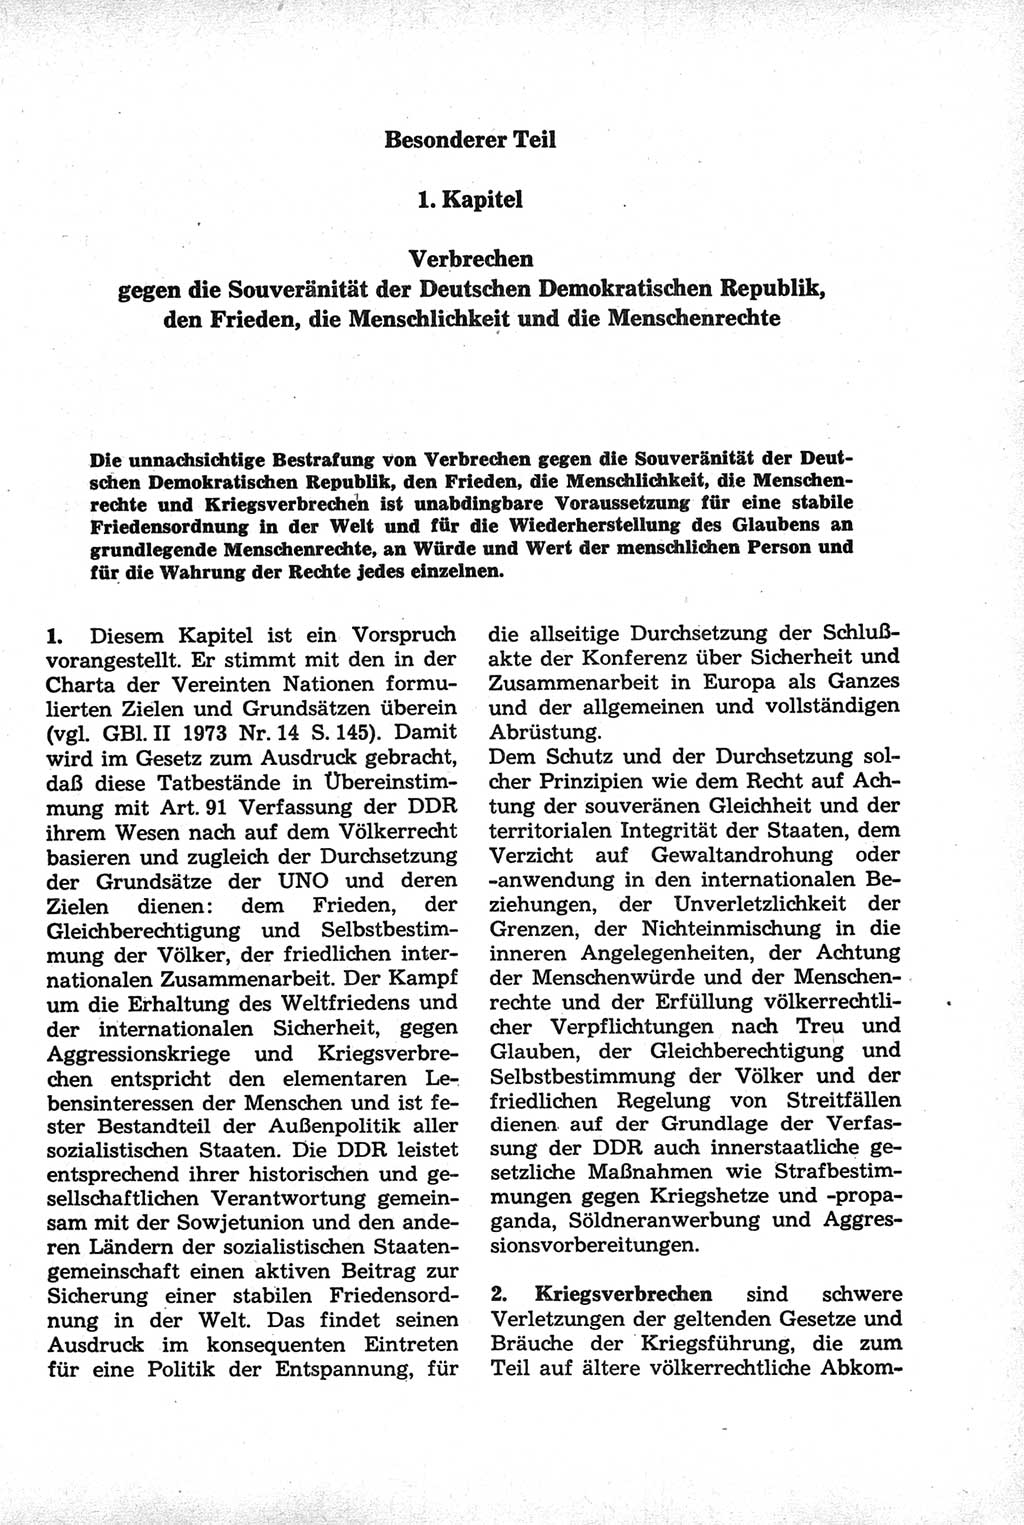 Strafrecht der Deutschen Demokratischen Republik (DDR), Kommentar zum Strafgesetzbuch (StGB) 1981, Seite 263 (Strafr. DDR Komm. StGB 1981, S. 263)